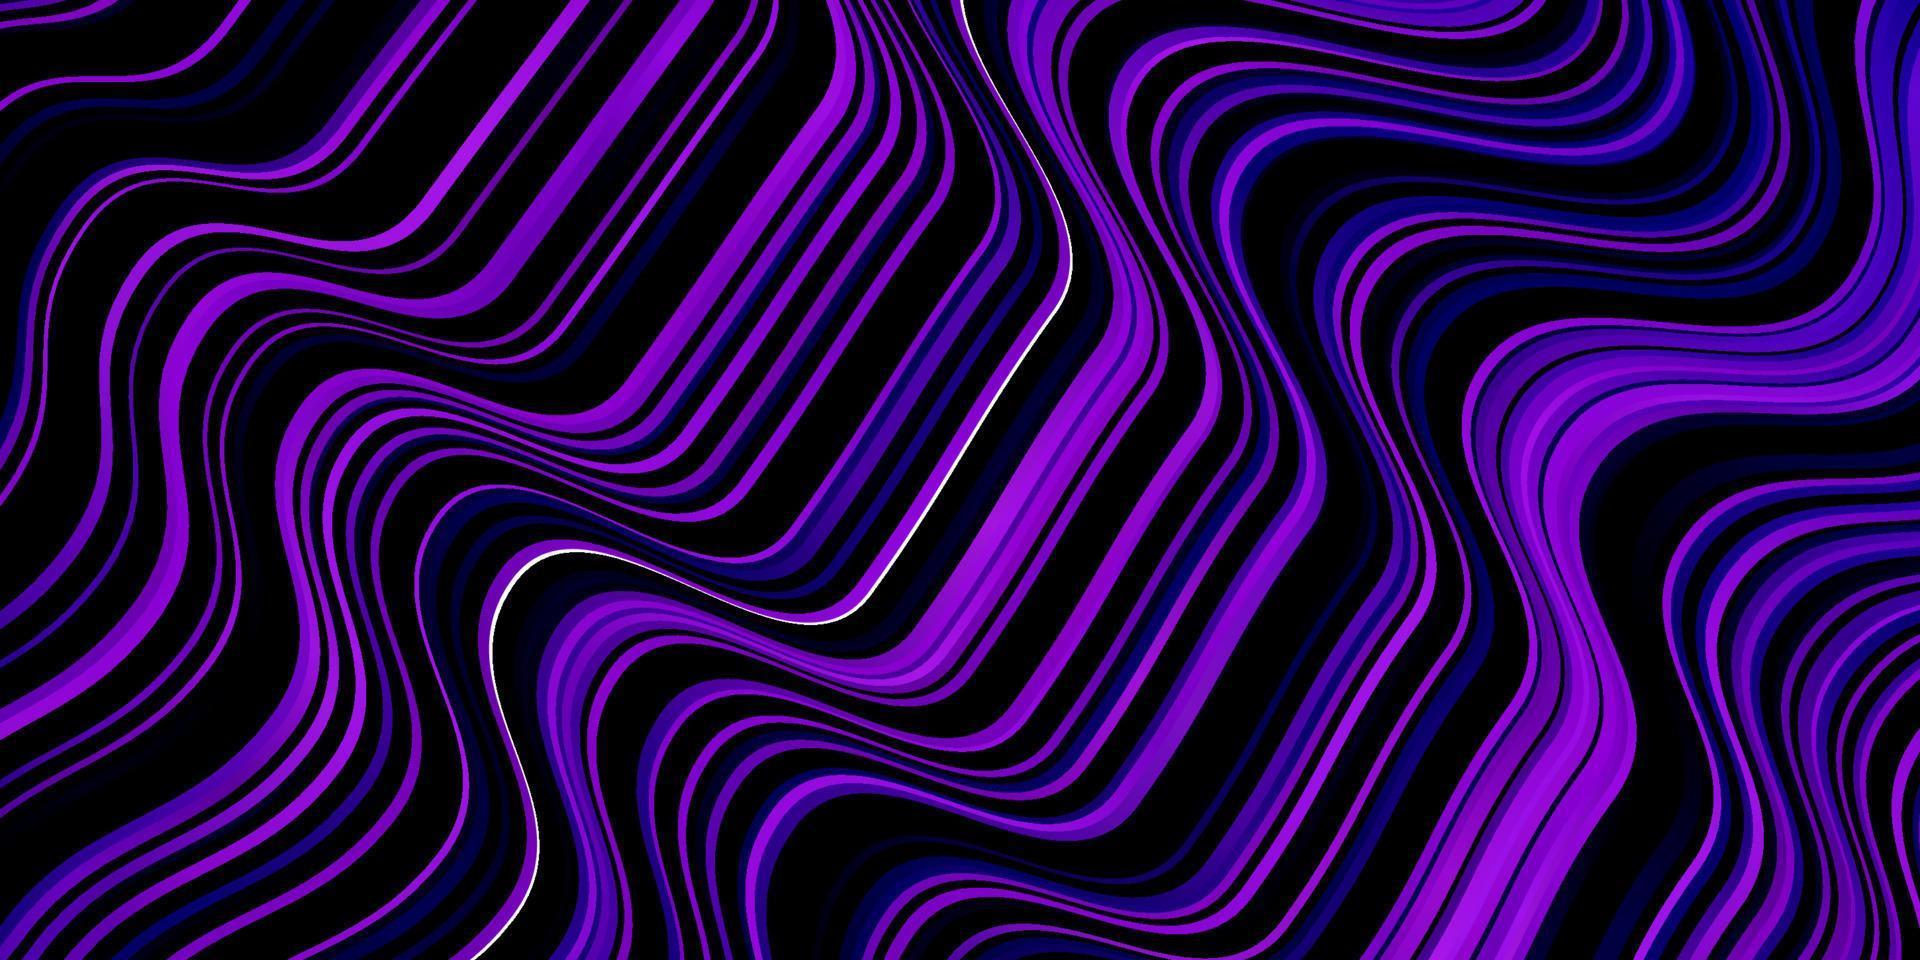 plantilla de vector púrpura oscuro con curvas.